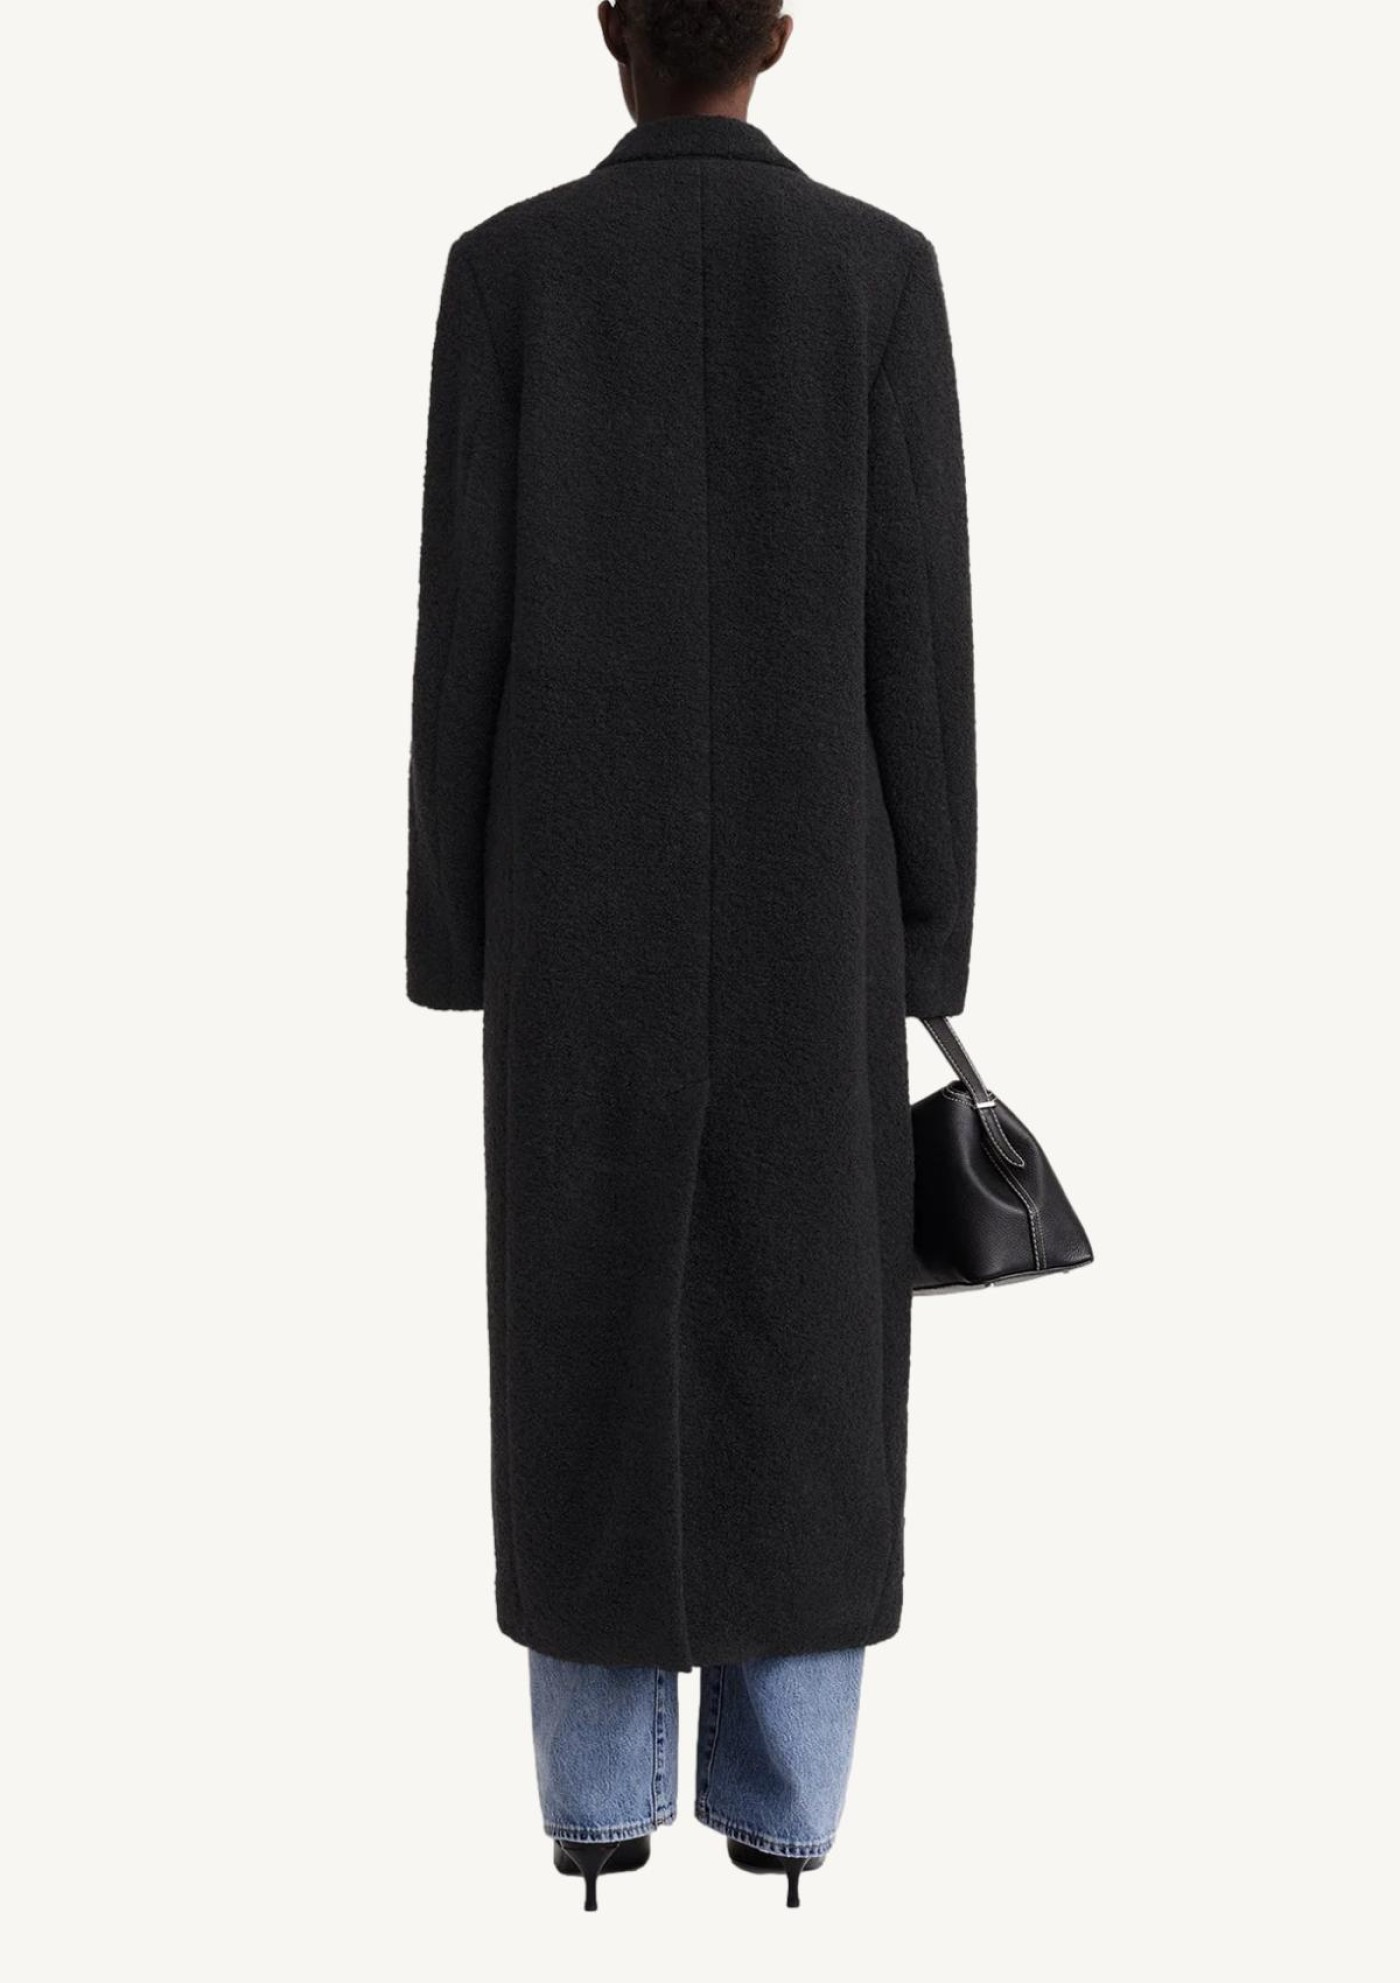 Black curly wool lapel coat